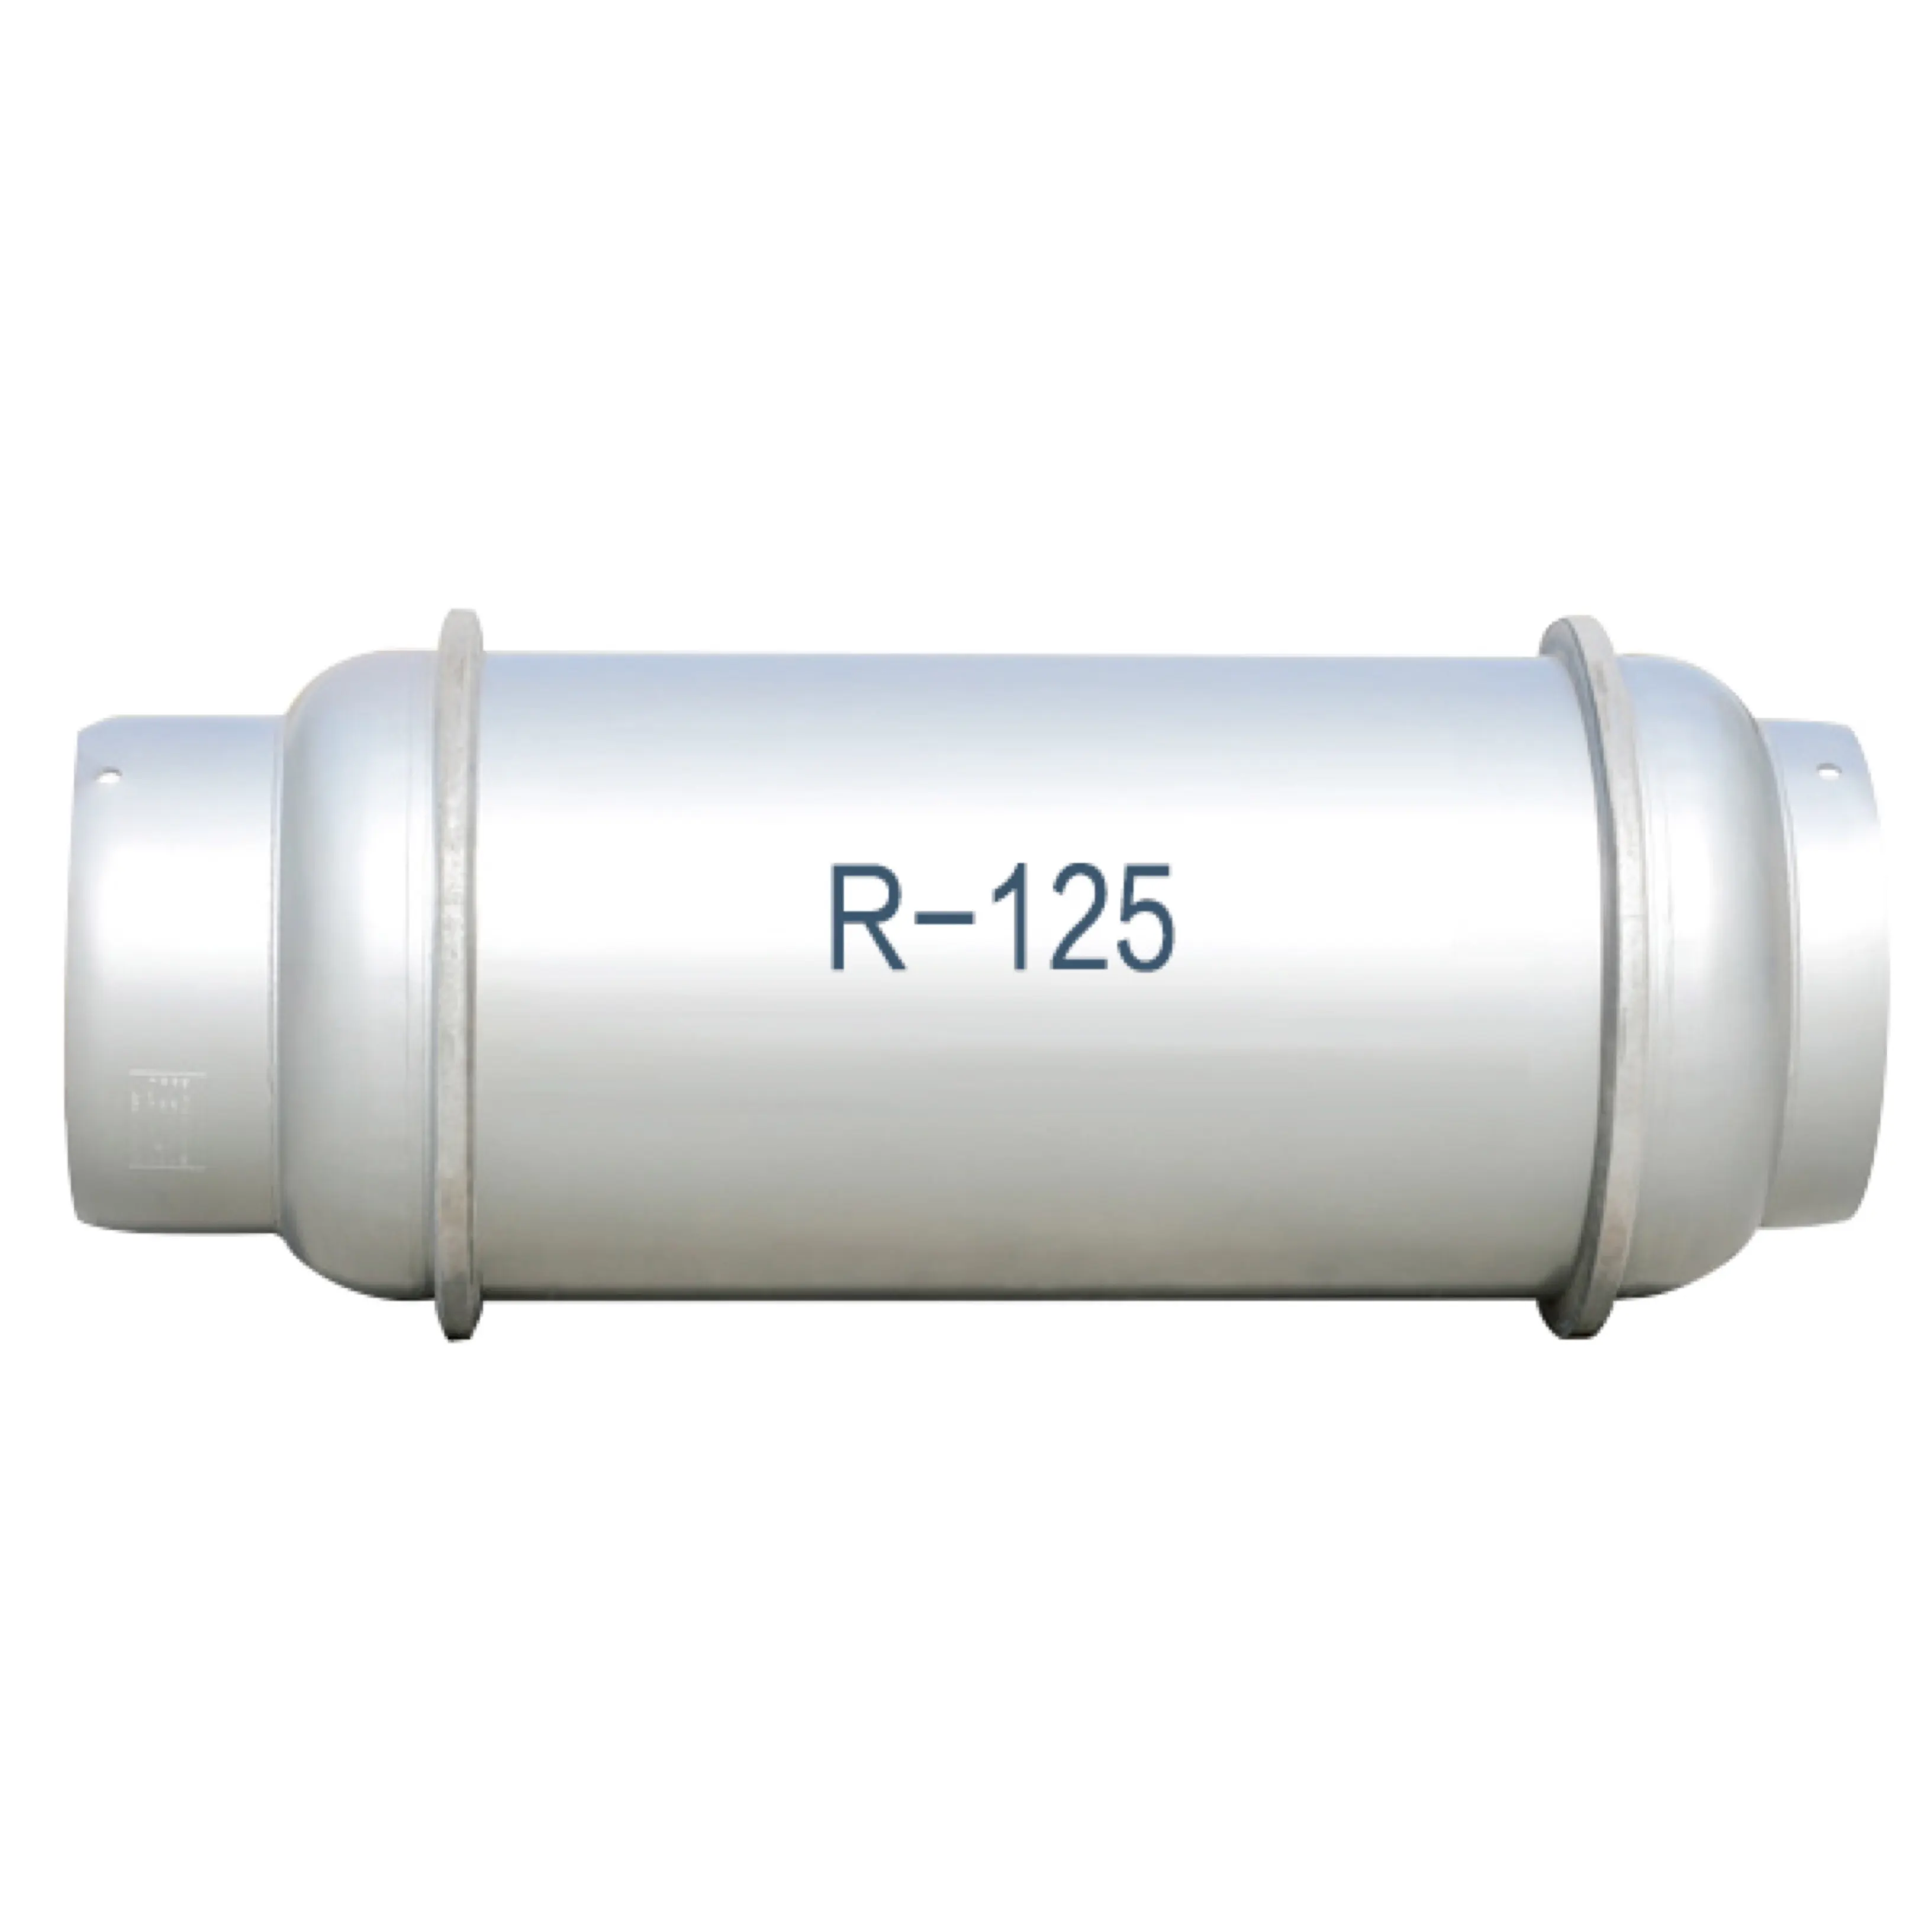 R125 AC Acondicionado Sistema de refrigeración por gas Ton Cilindro 660KGS